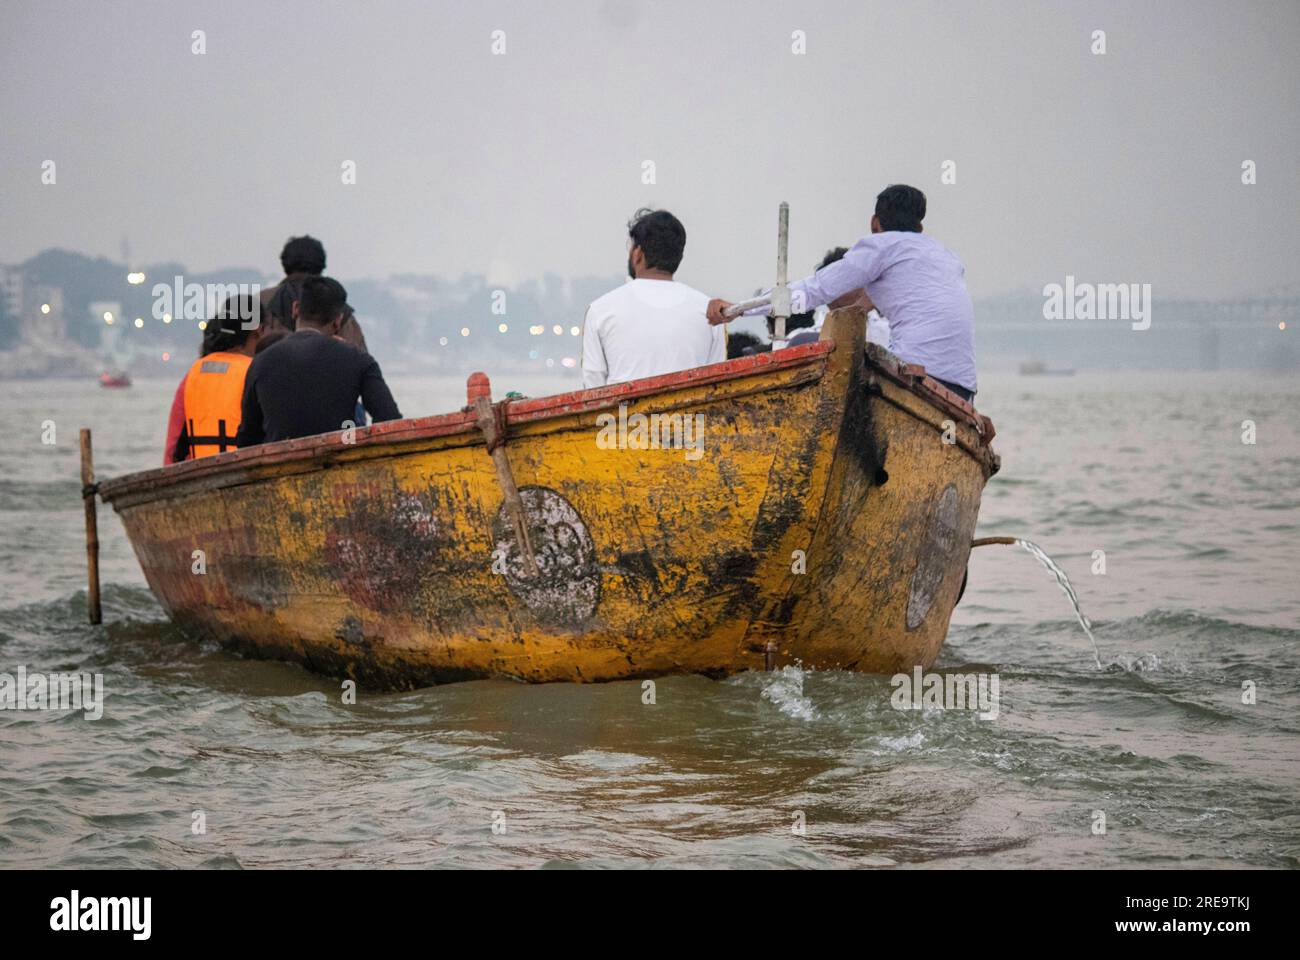 Des gens dans un bateau sur le gange à Veranassi. Les gens préparent des bûchers funéraires à Varanasi sur les rives du Gange, qui est l'une des plus anciennes villes continuellement habitées dans le monde, et la plus sainte des sept villes sacrées de l'hindouisme. Chaque jour, à Manikarnika Ghat, le ghat de crémation le plus grand et le plus propice, environ 100 corps sont incinérés sur des bûchers en bois le long du bord de la rivière. On dit que la flamme éternelle qui alimente les feux brûle depuis des siècles maintenant. Varanasi, Inde. Banque D'Images